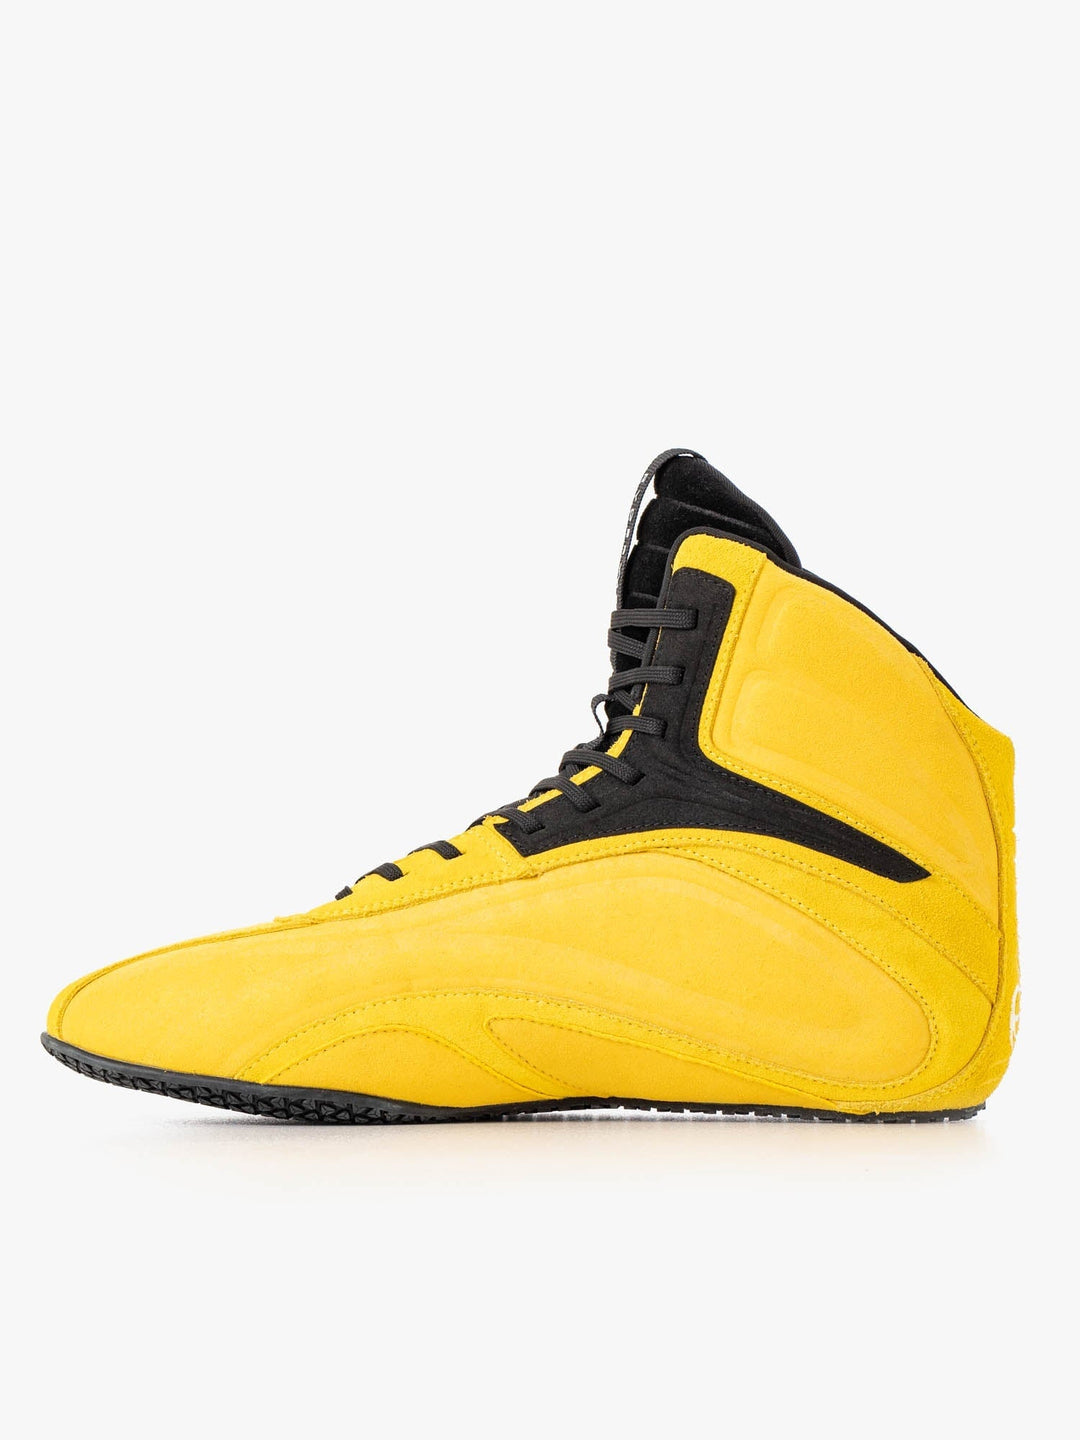 D-Mak 3 - Yellow Shoes Ryderwear 